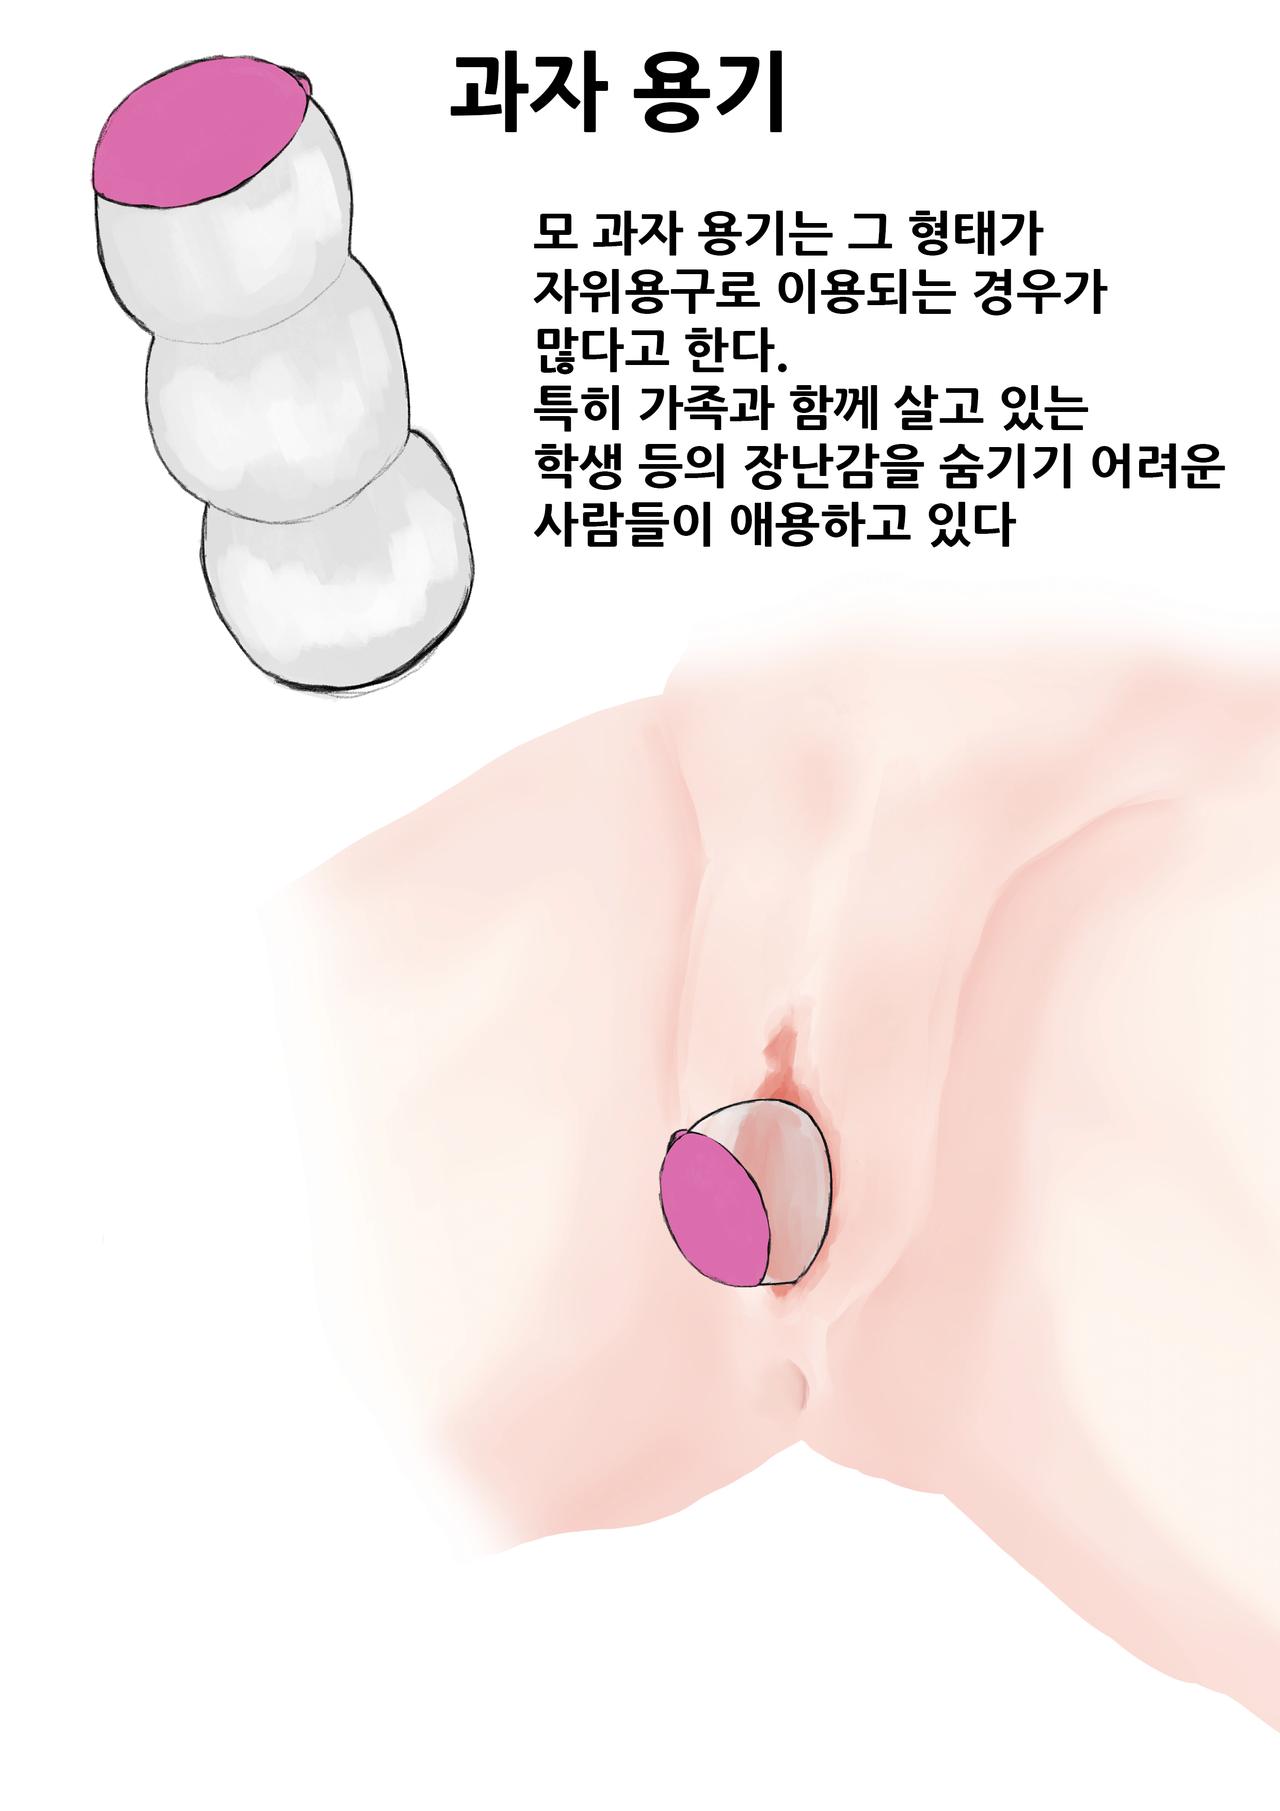 자위여자 해설도감 - Page 3 - IMHentai